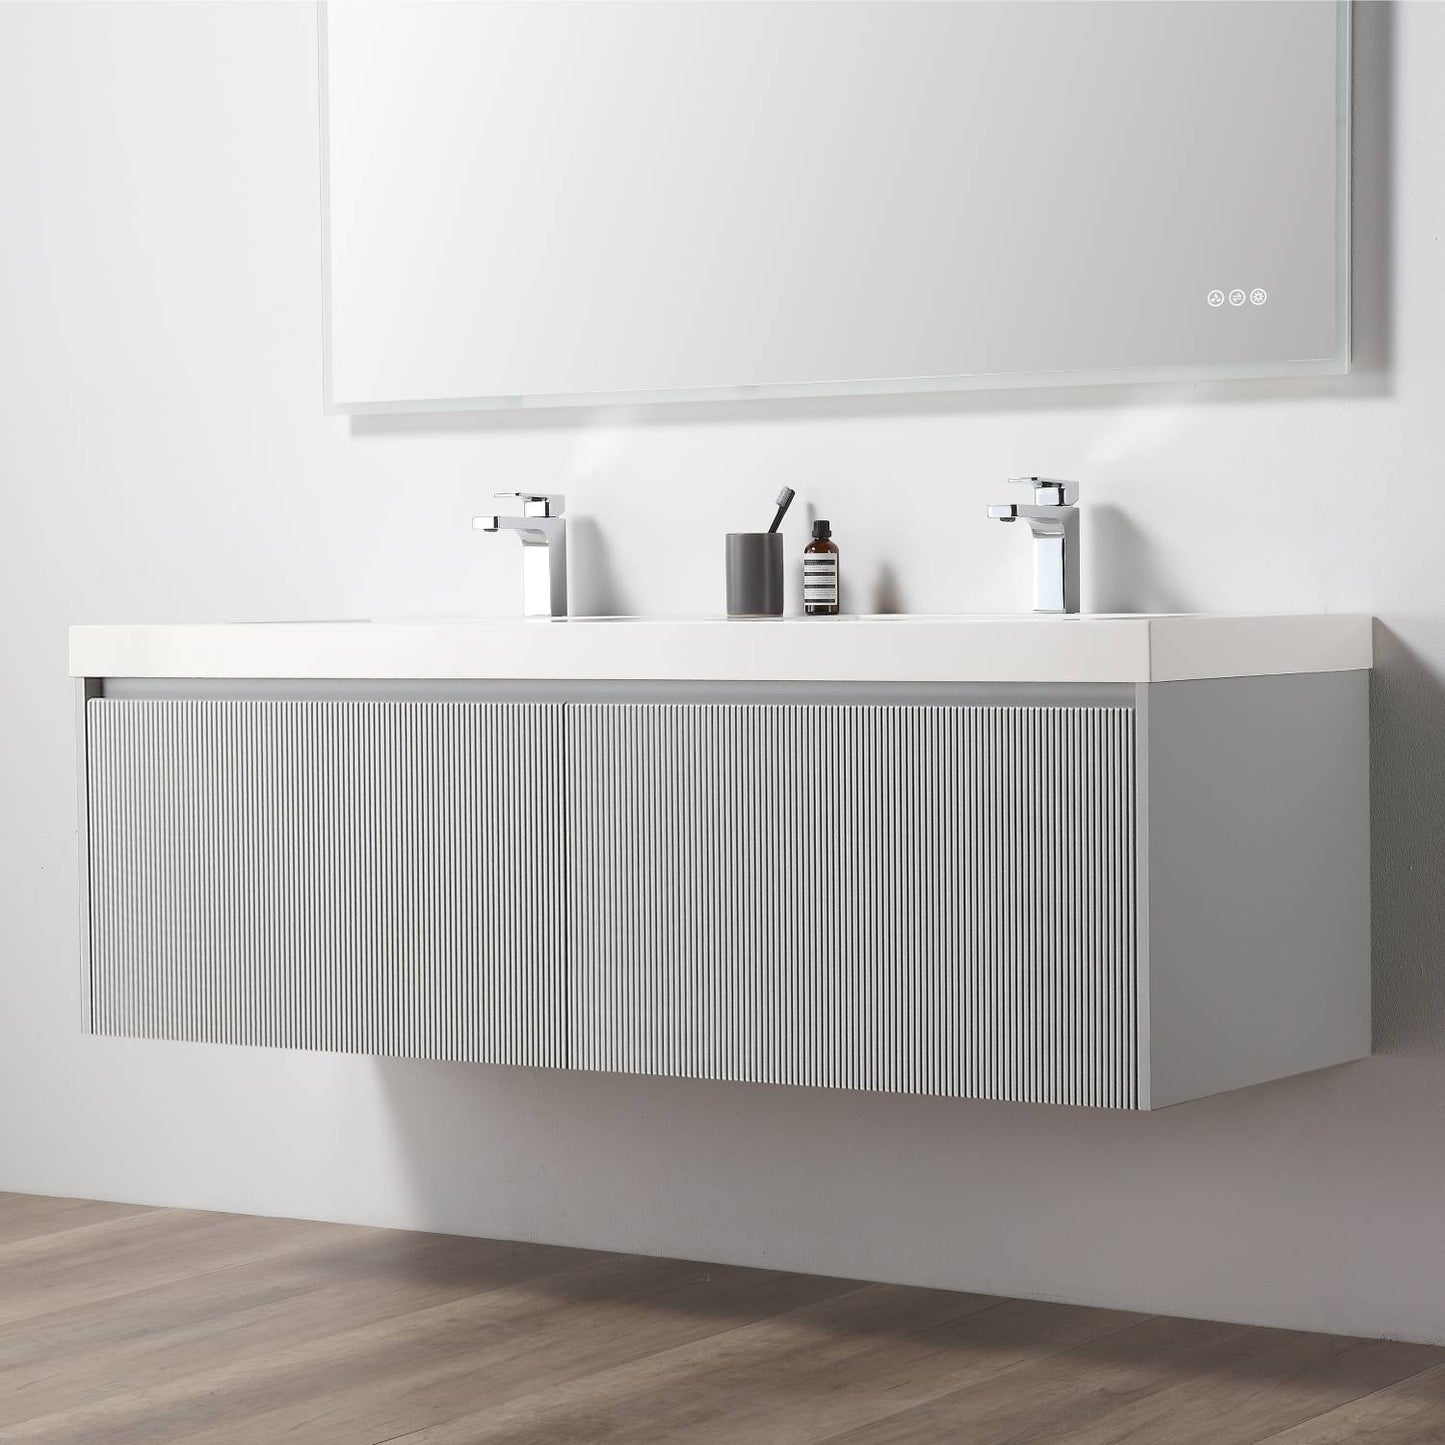 Positano 60" Floating Bathroom Vanity with Acrylic Sinks & 2 Side Cabinets - Light Grey